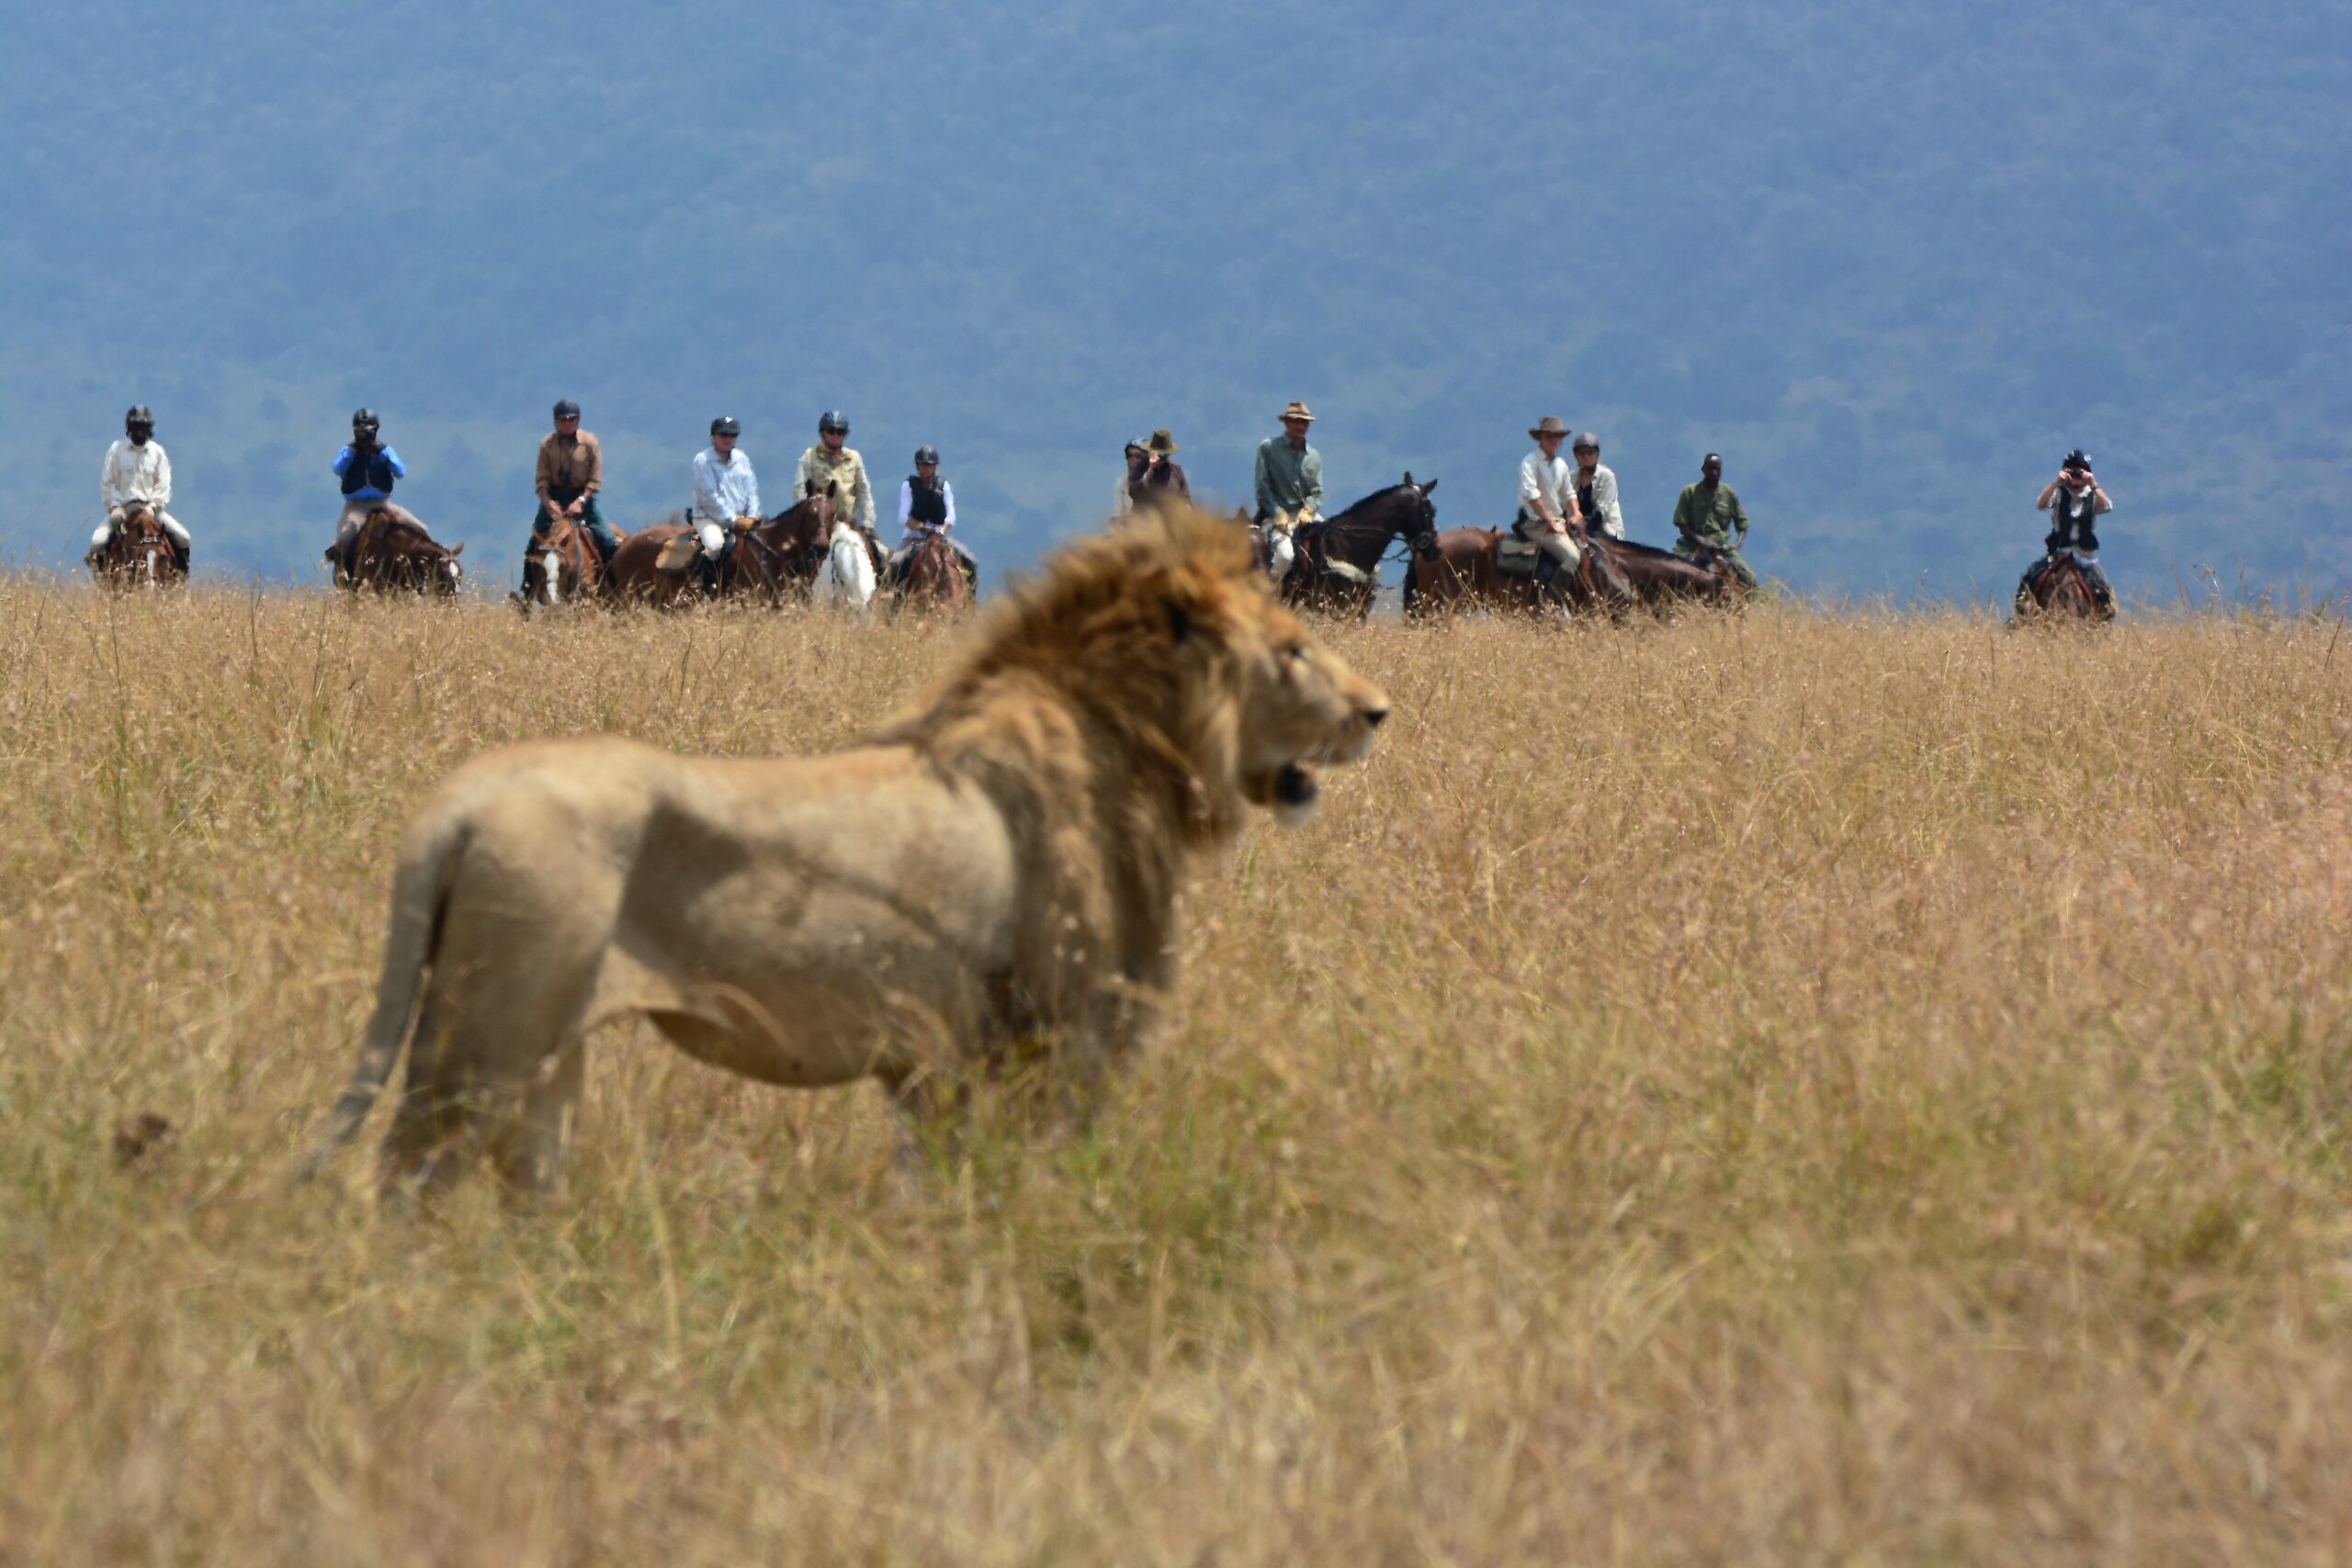 Safari te paard in de Masai regio / Kenia - Vakantie te paard / Reisbureau Perlan